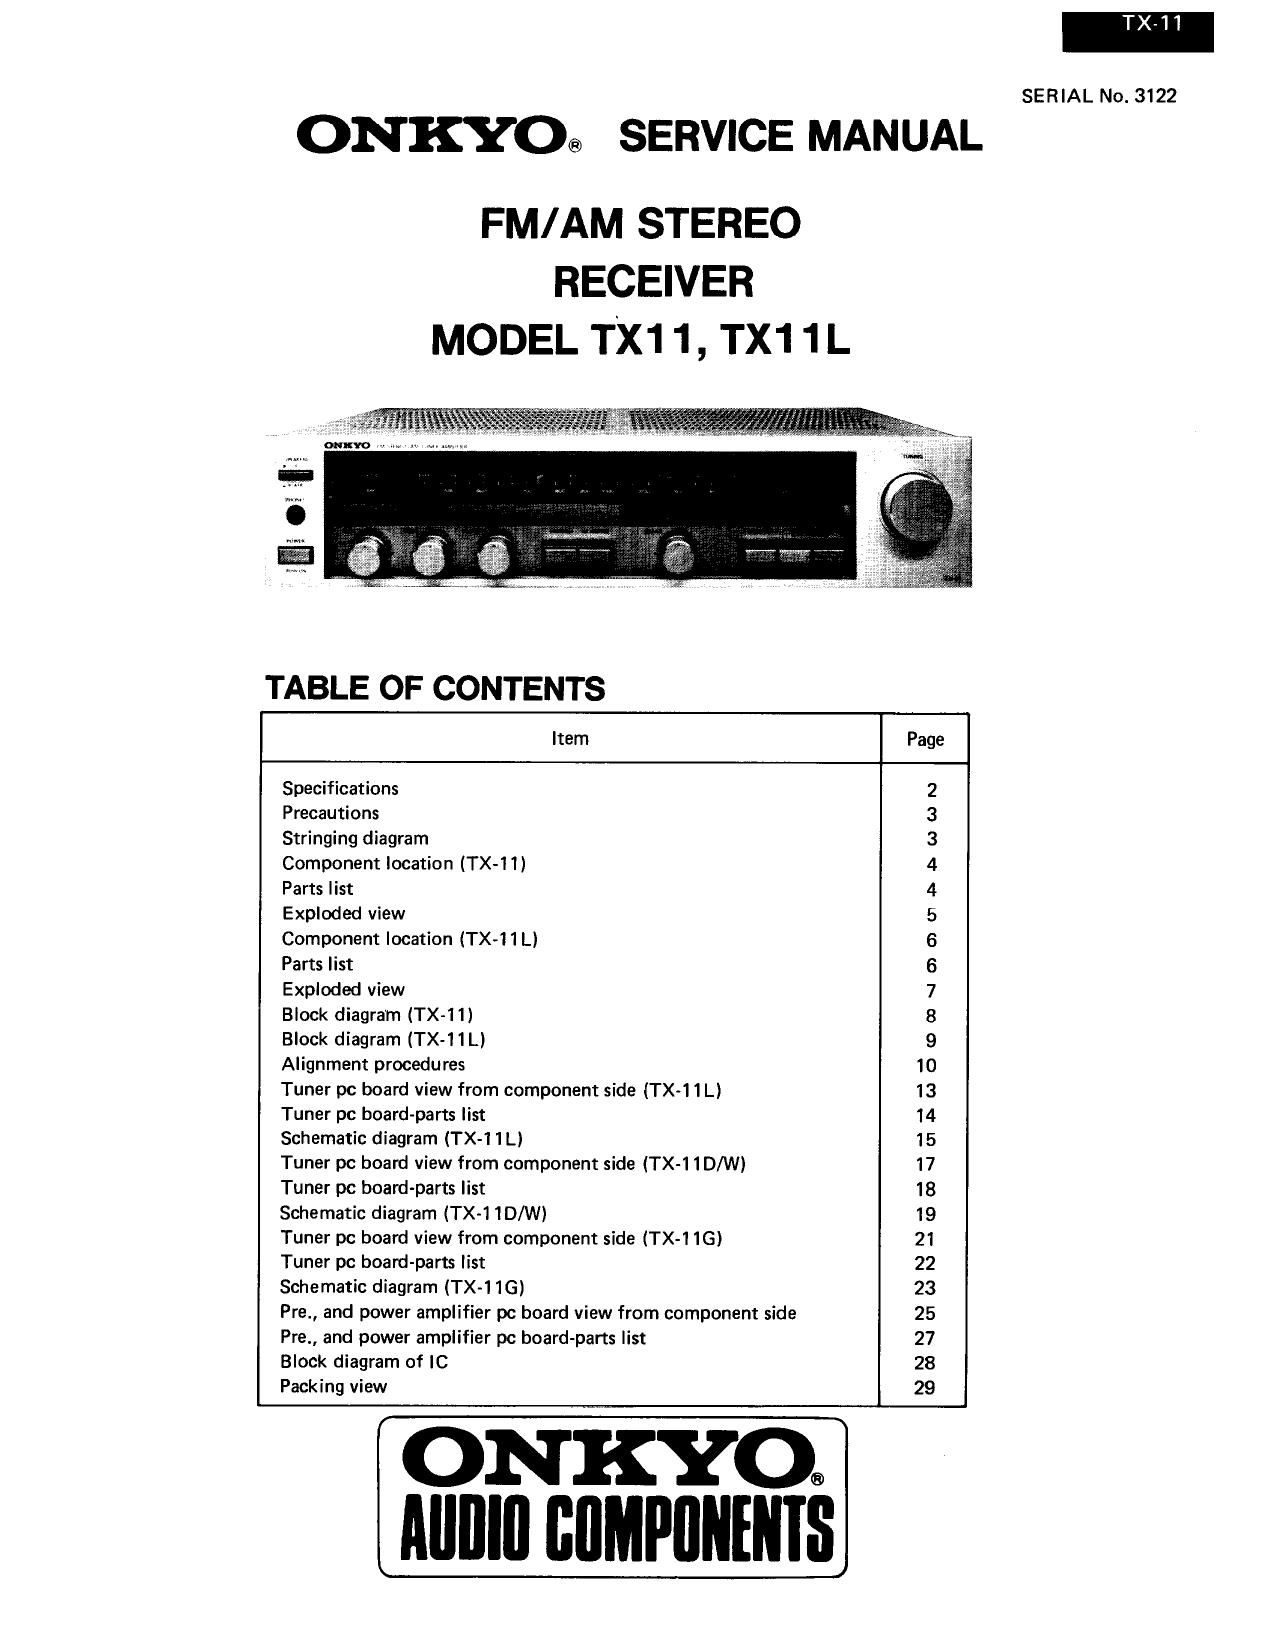 Onkyo TX 11 L Service Manual